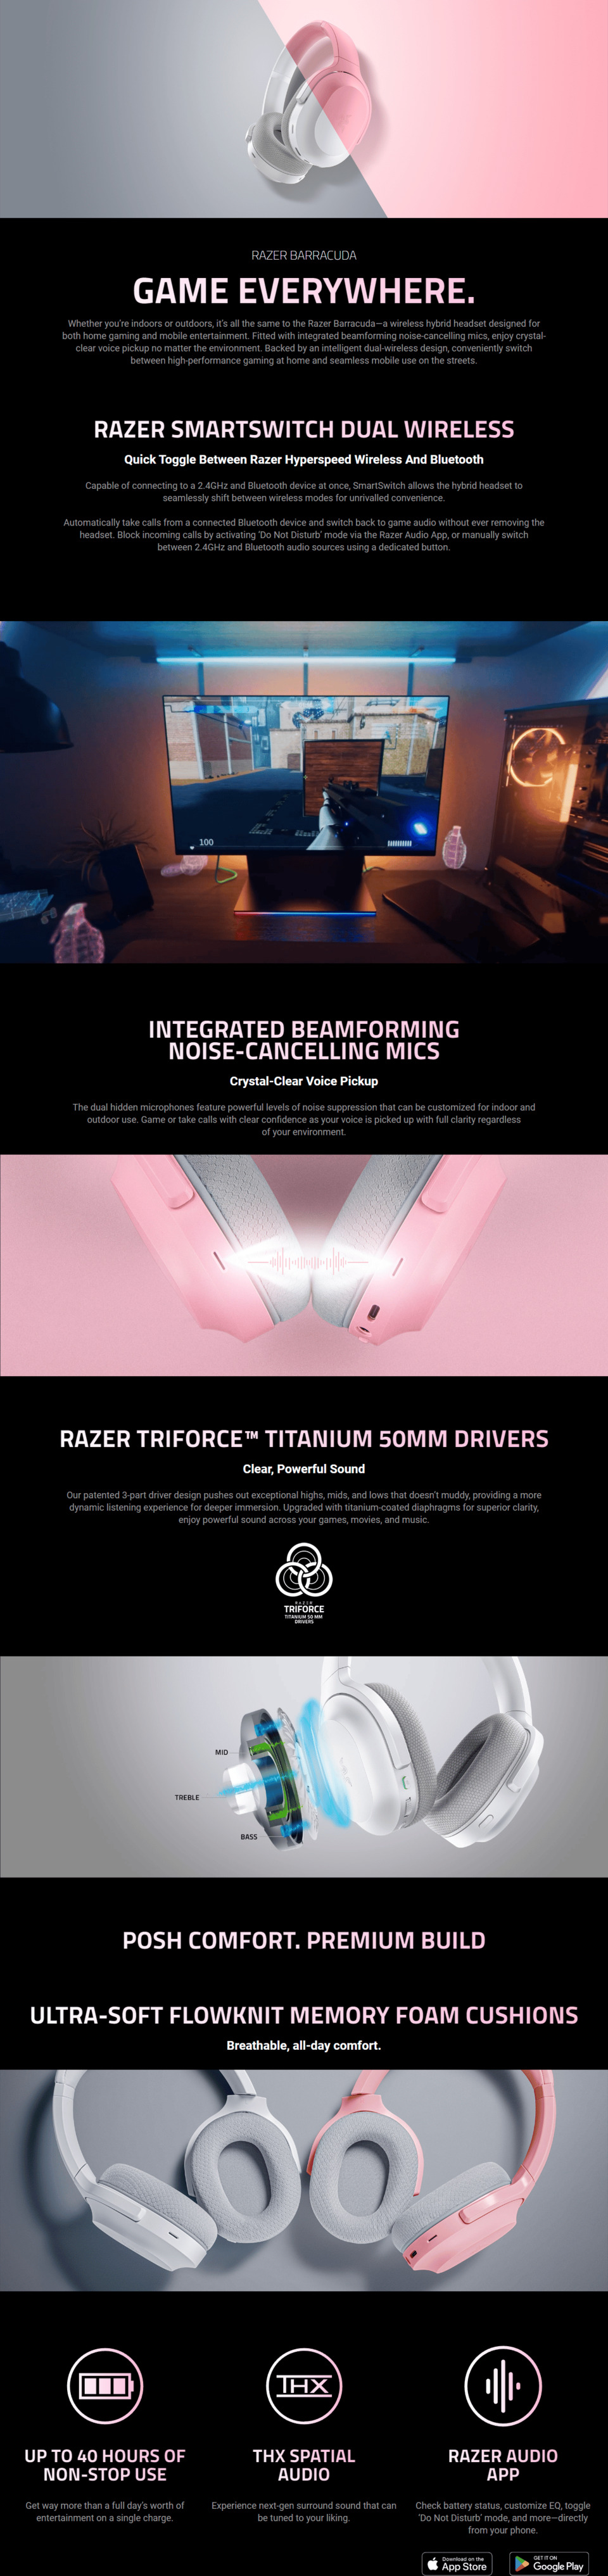 razer barracuda wireless multi-platform quartz headset